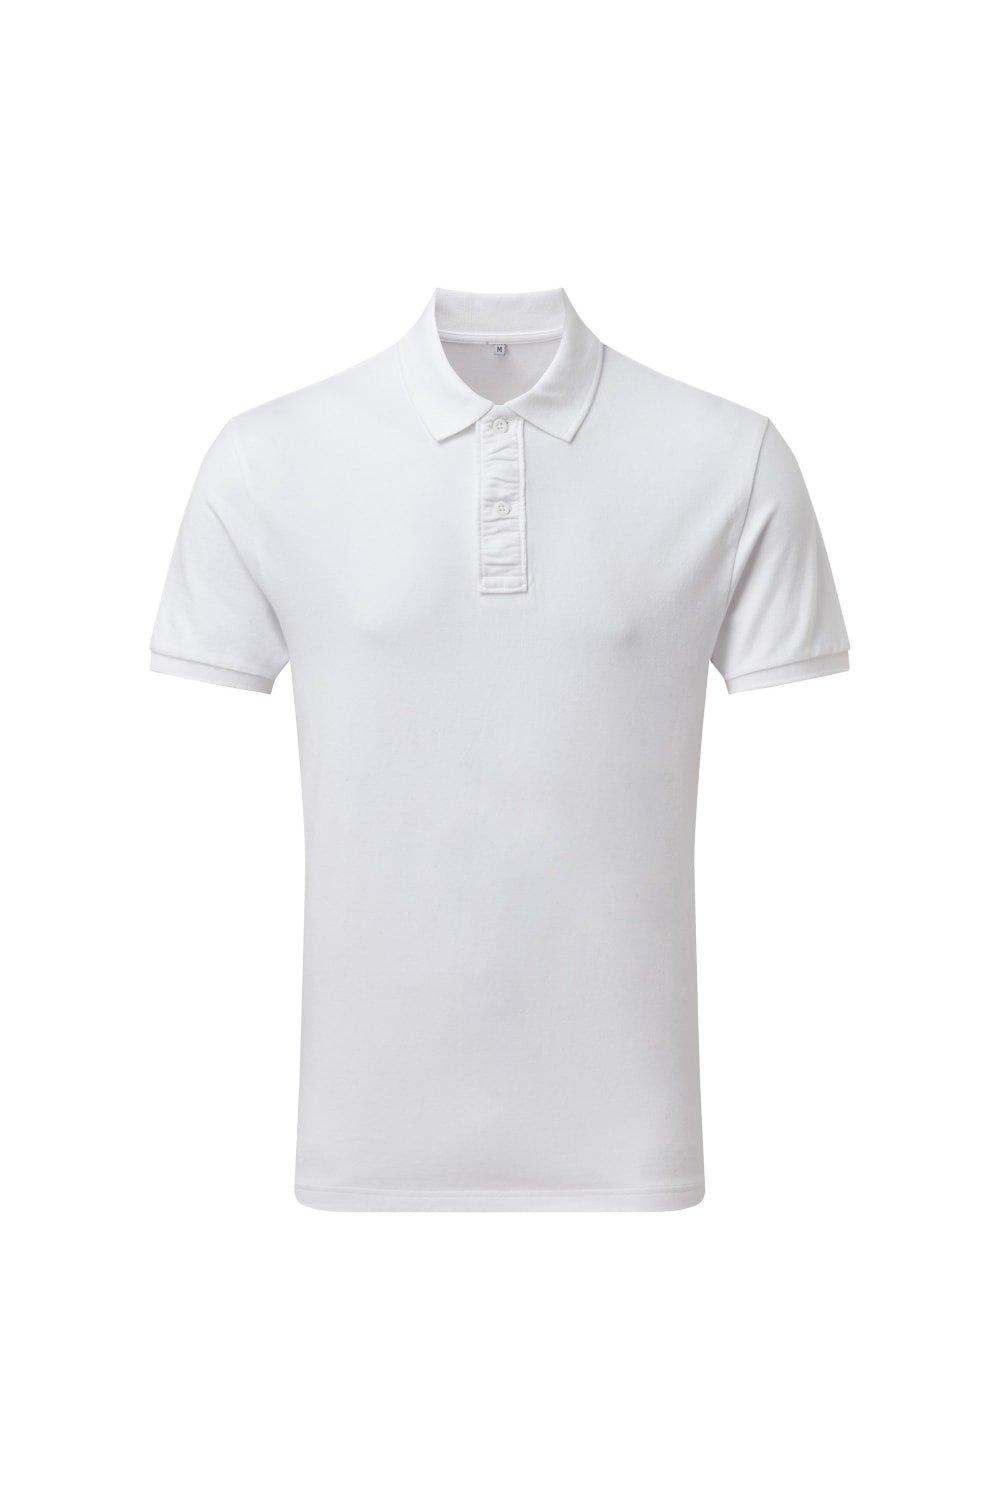 Рубашка-поло Infinity стрейч Asquith & Fox, белый